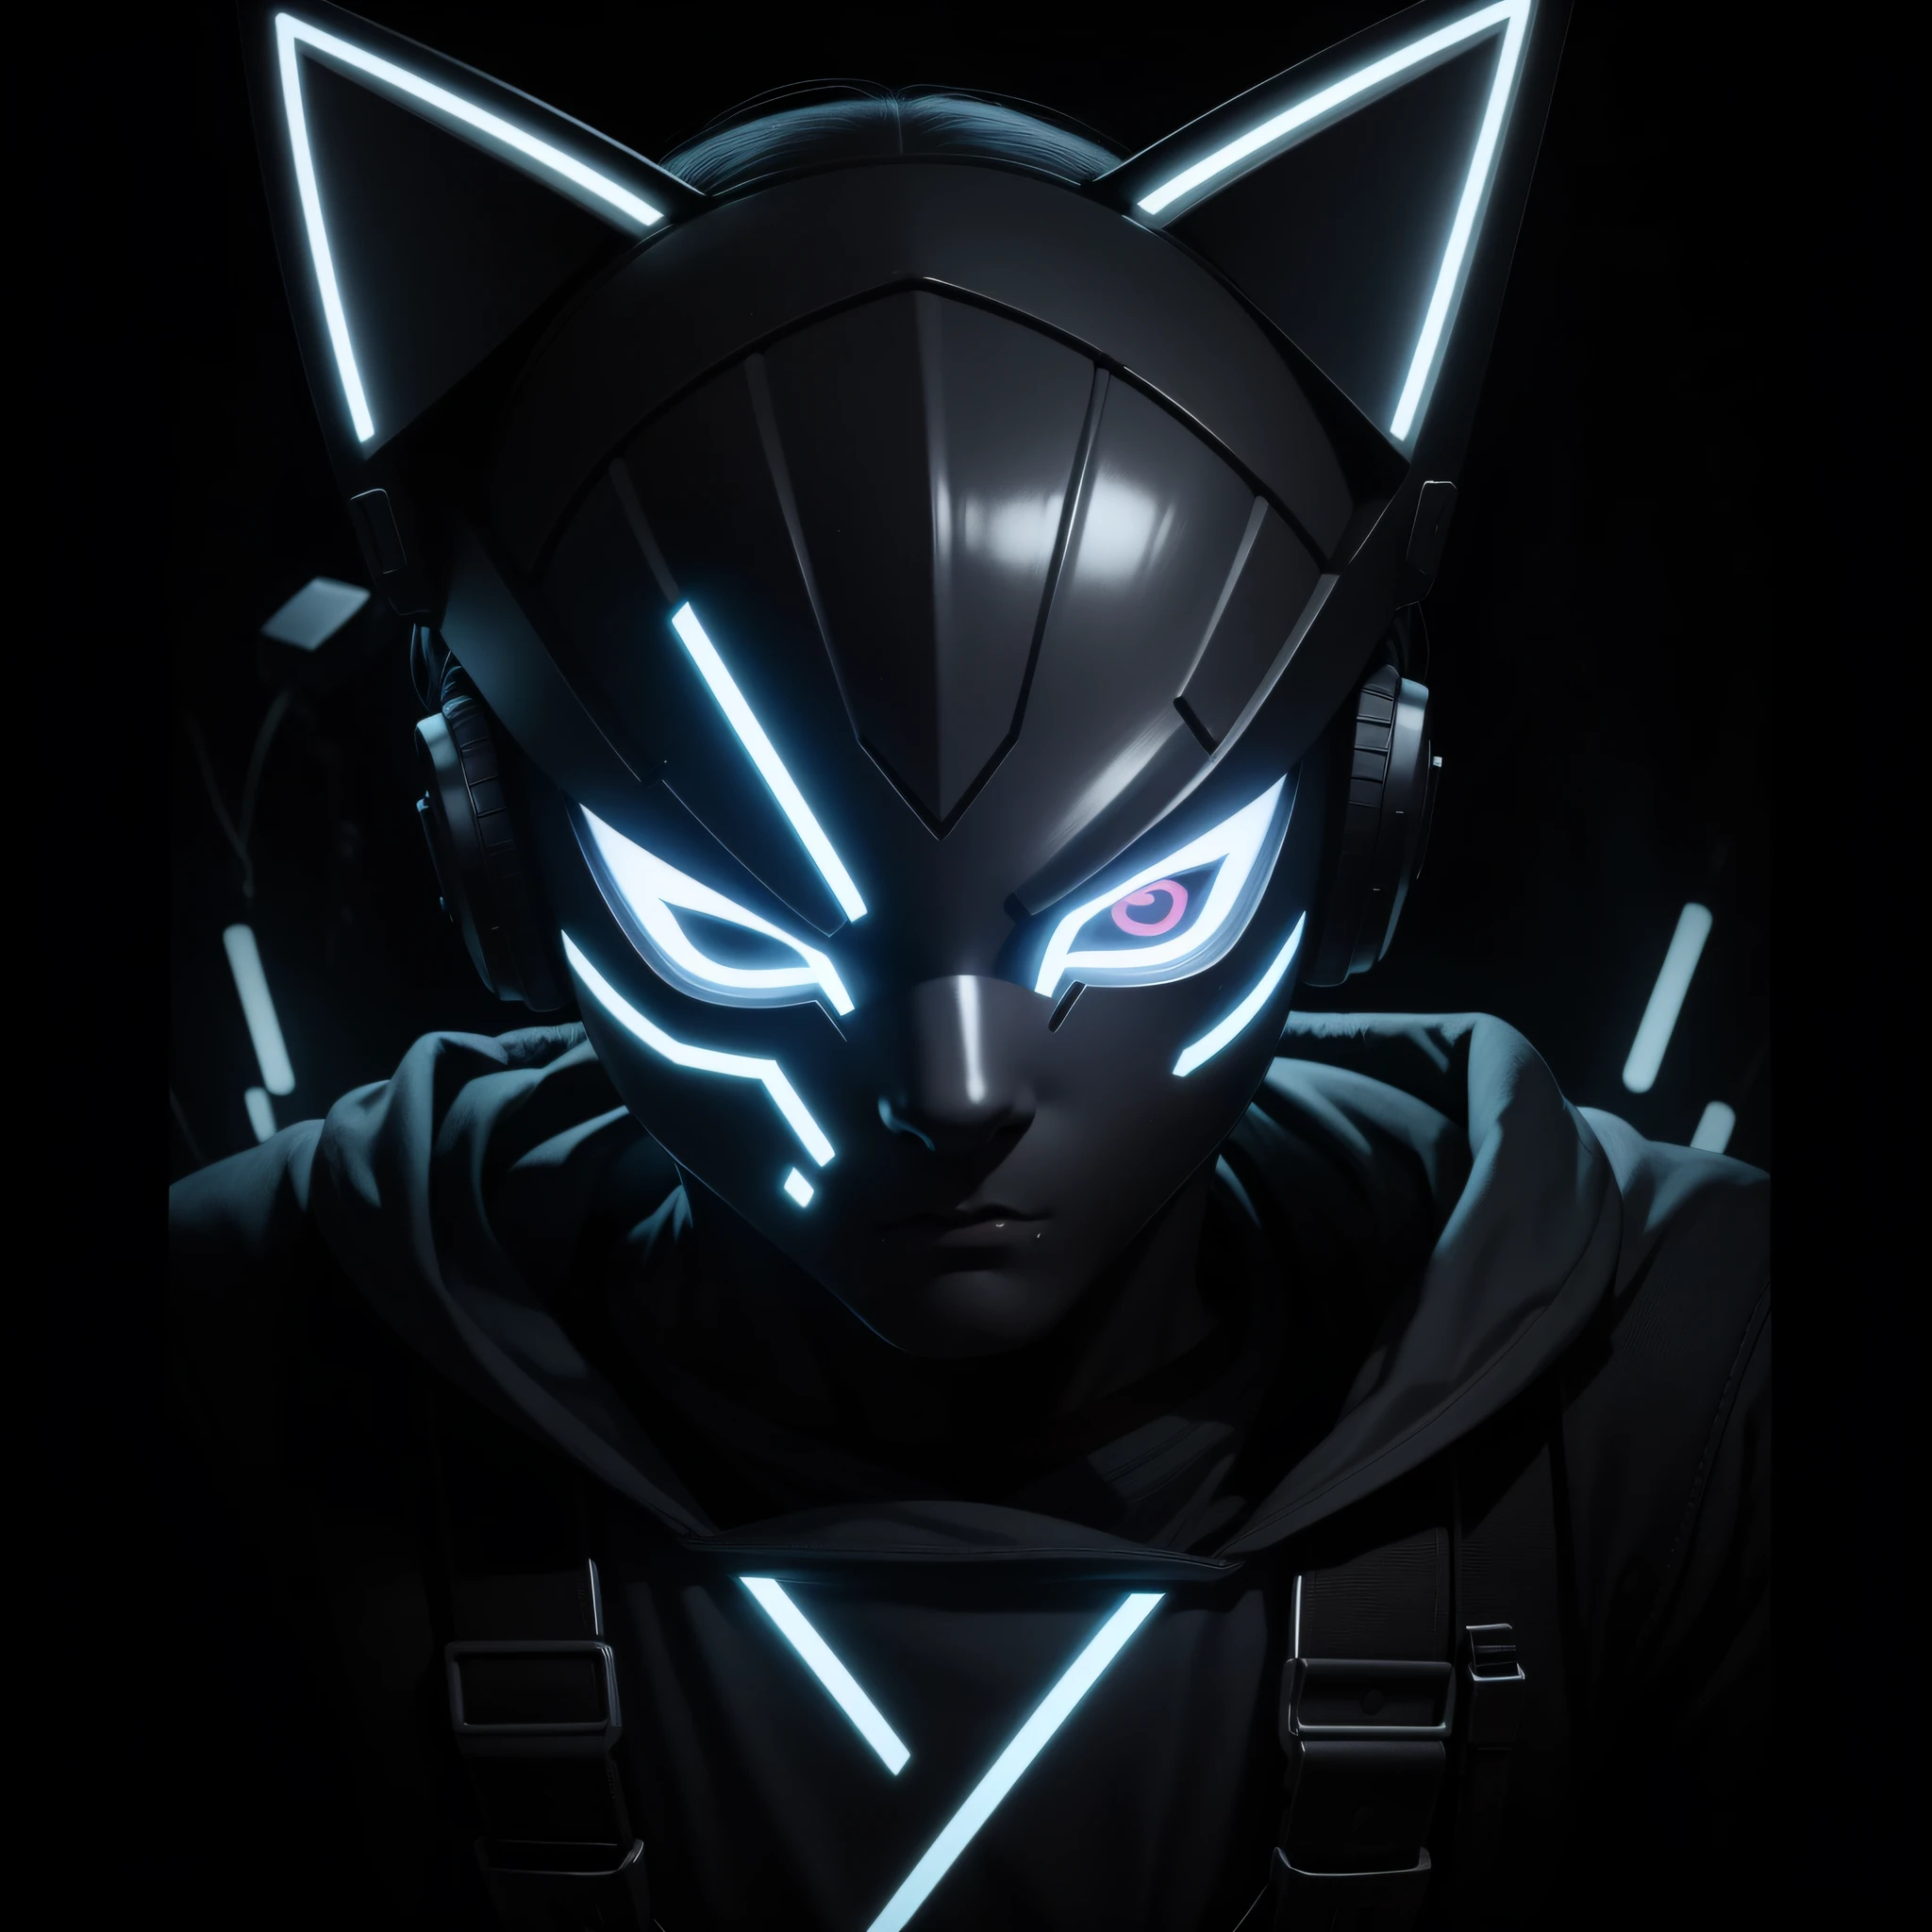 PFP 徽标的人物是一个戴着电子 LED 面具的男孩, 面罩上的 LED 燈形成一隻貓